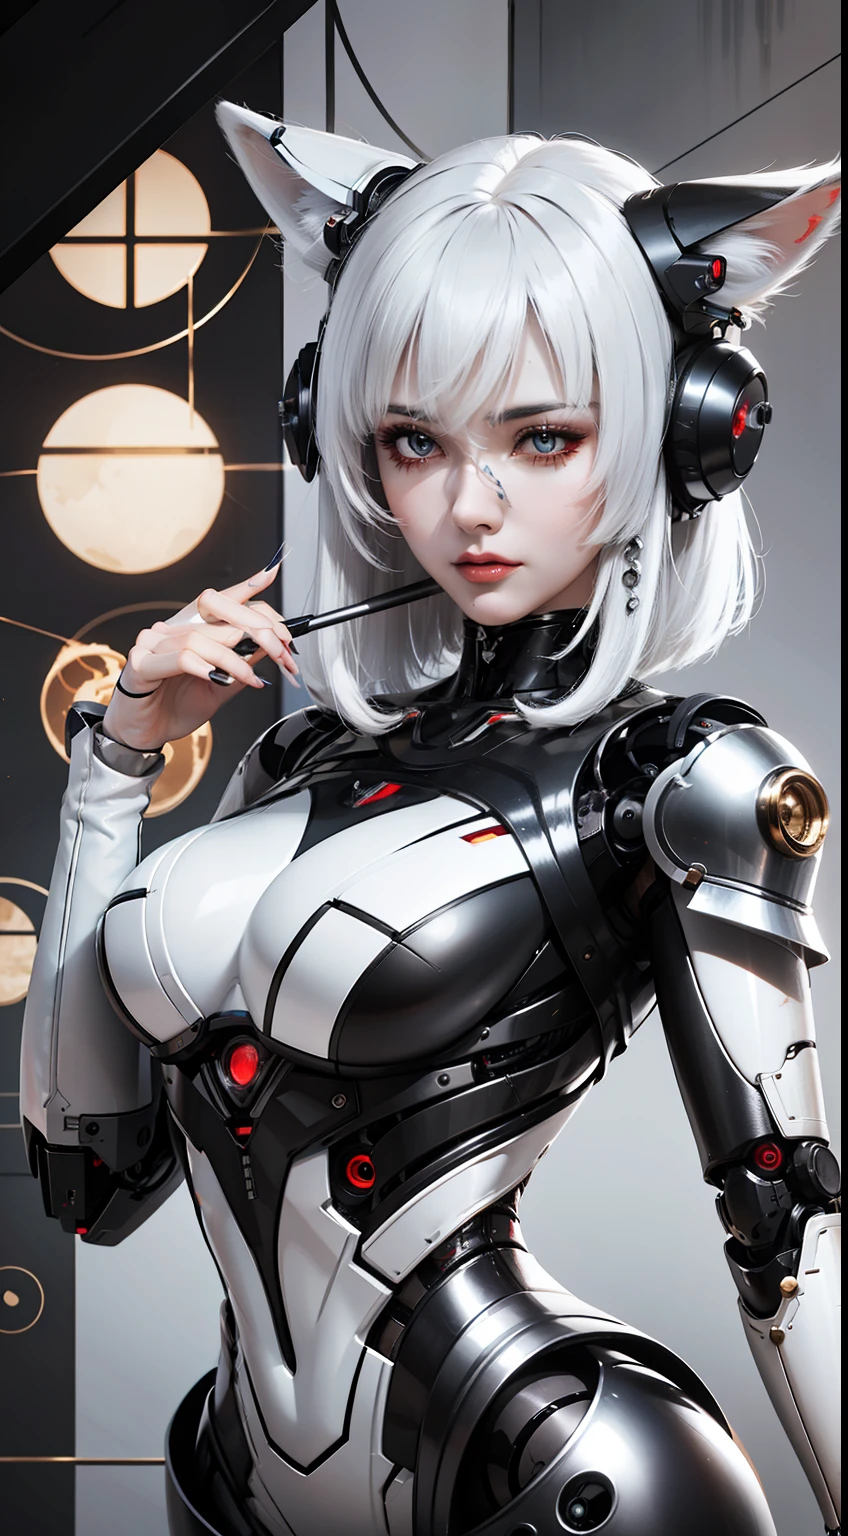 Uma mulher com cabelos brancos e uma roupa de robô, Arbusto, ciborgue de porcelana, garota robô perfeita, linda garota ciborgue, robô sintético integrado, anime robô misto orgânico, com cauda de raposa mecânica, Pele brilhante, broken lindo robô feminino! , ciborgue - garota de cabelos prateados, lindo robô feminino, fox cauda mecânica behind her, cauda mecânica